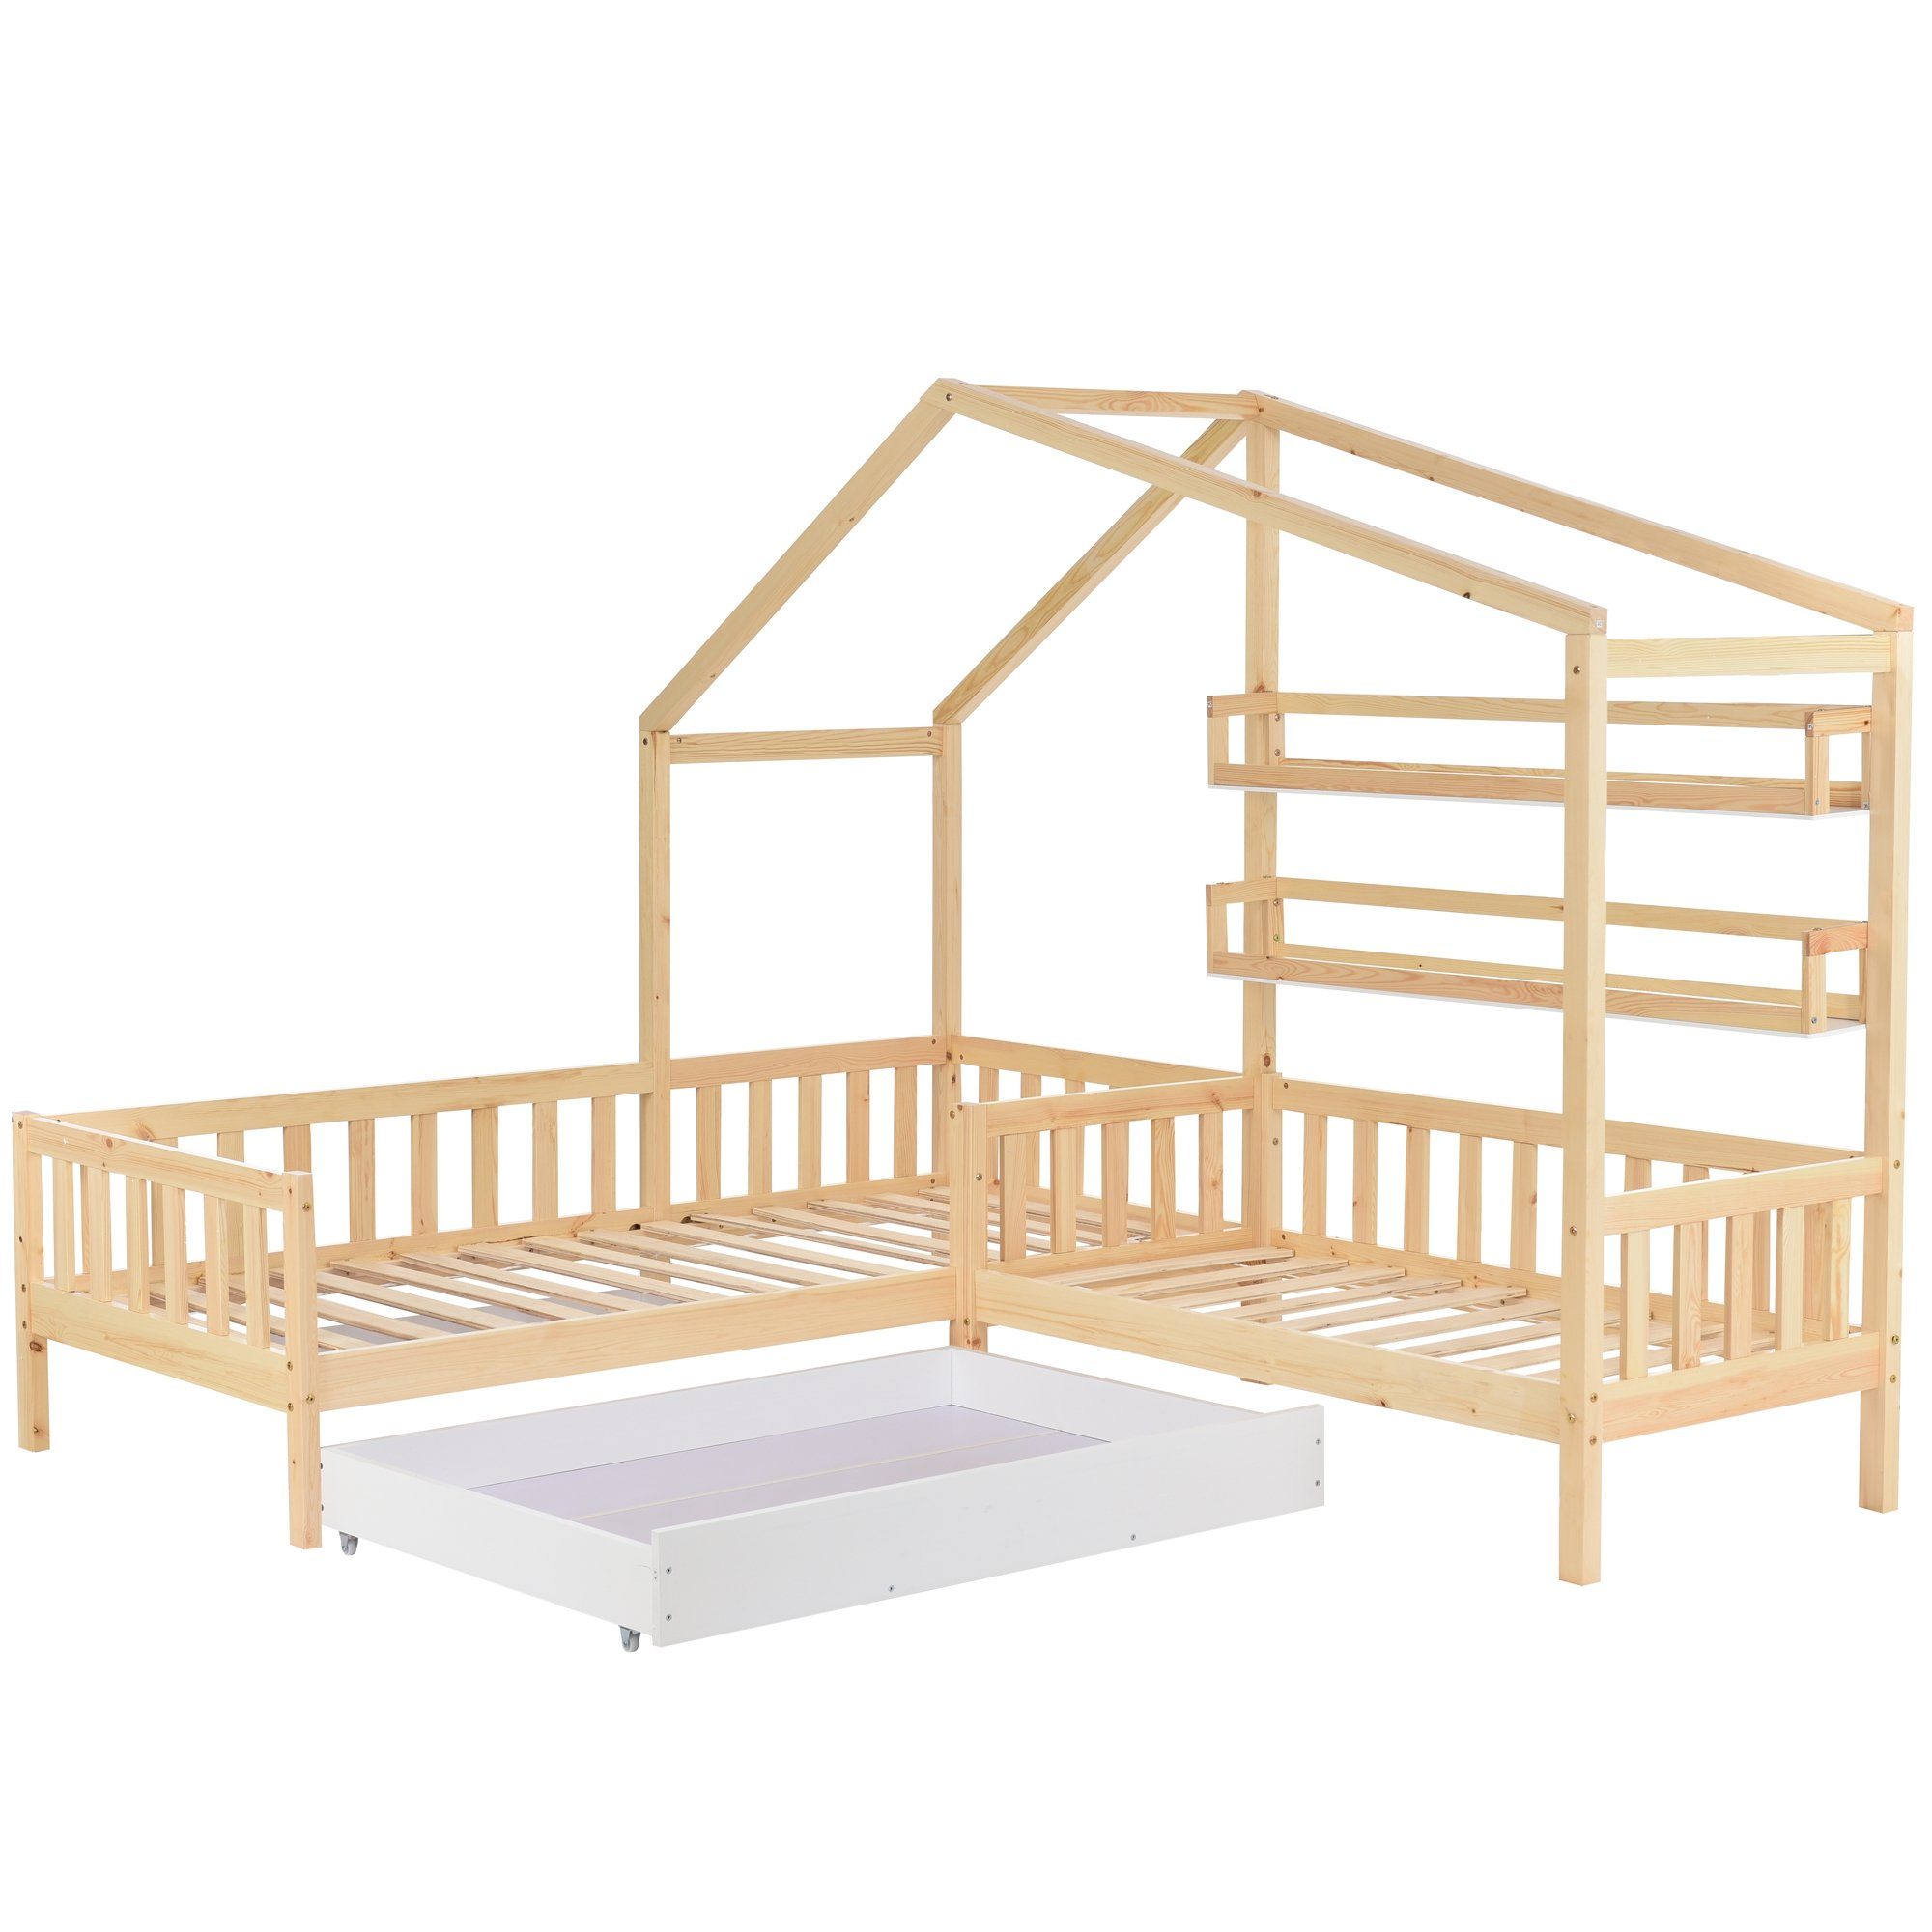 Gotagee Hausbett Kinderbett Hausbett mit Schubladen+Regalen Massivholz 90x200+140x70 cm, L-förmige Struktur, Doppelbett